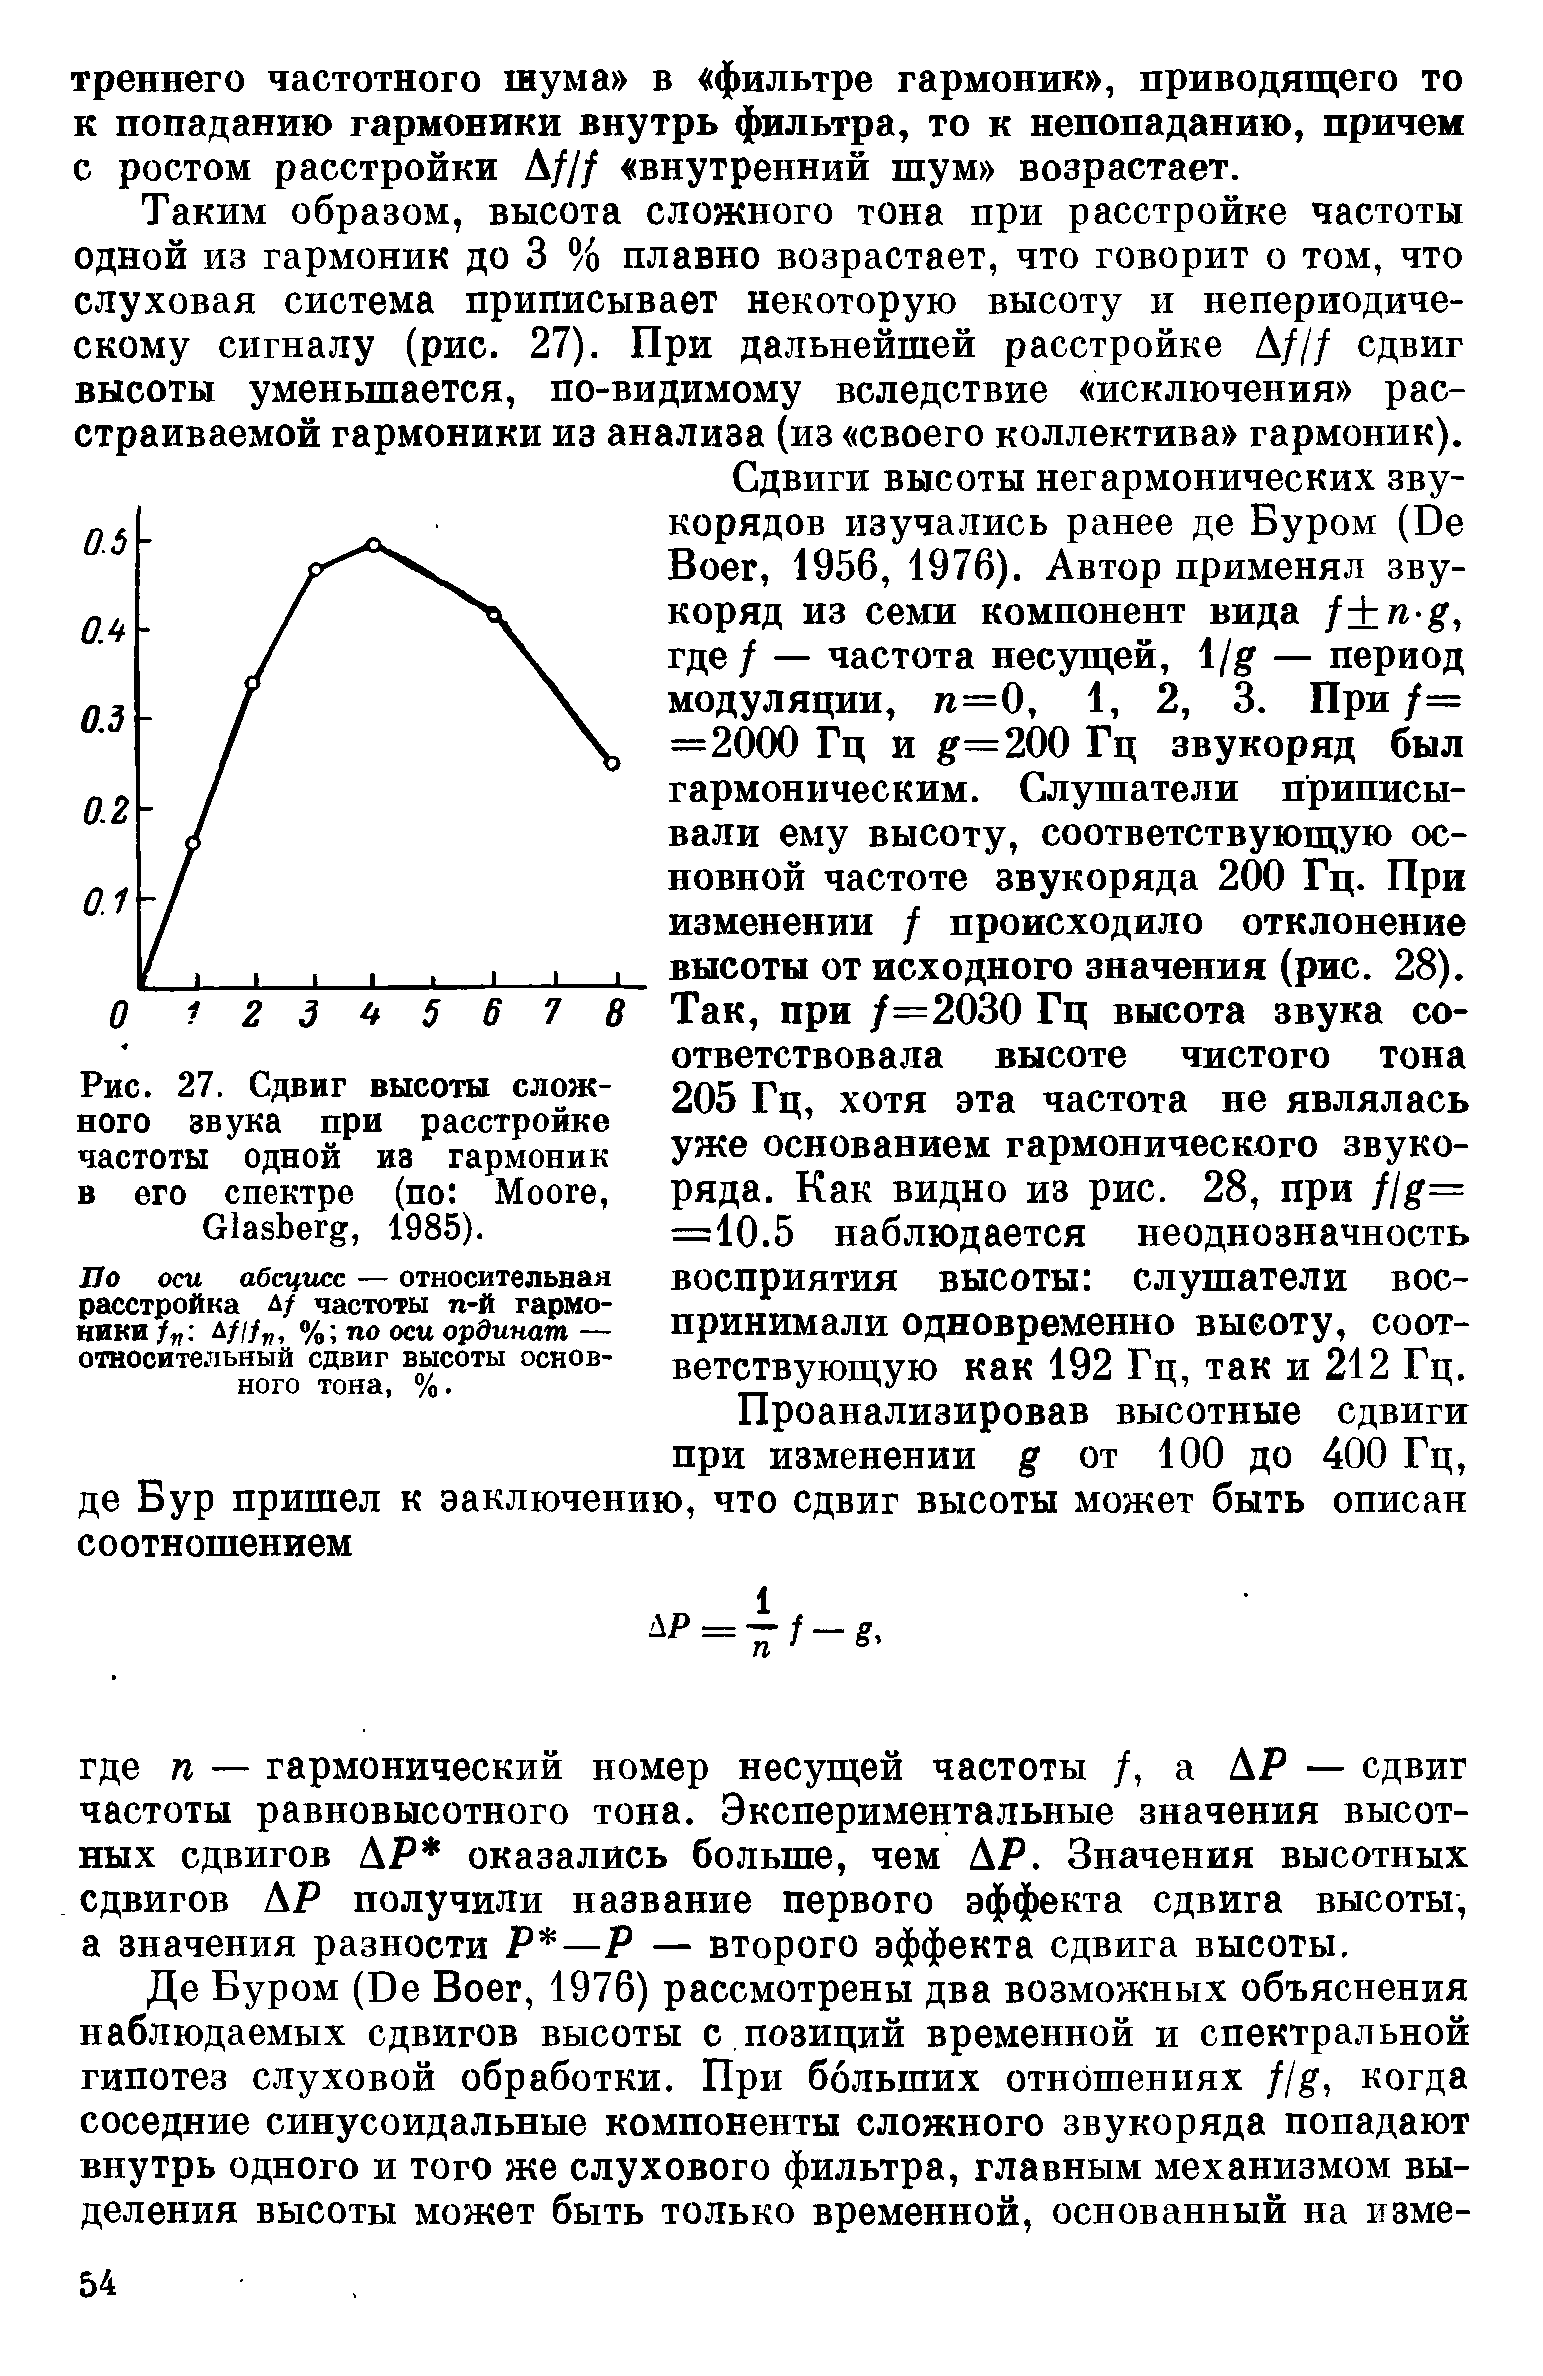 Рис. 27. Сдвиг высоты сложного звука при расстройке частоты одной из гармоник в его спектре (по M , G , 1985).